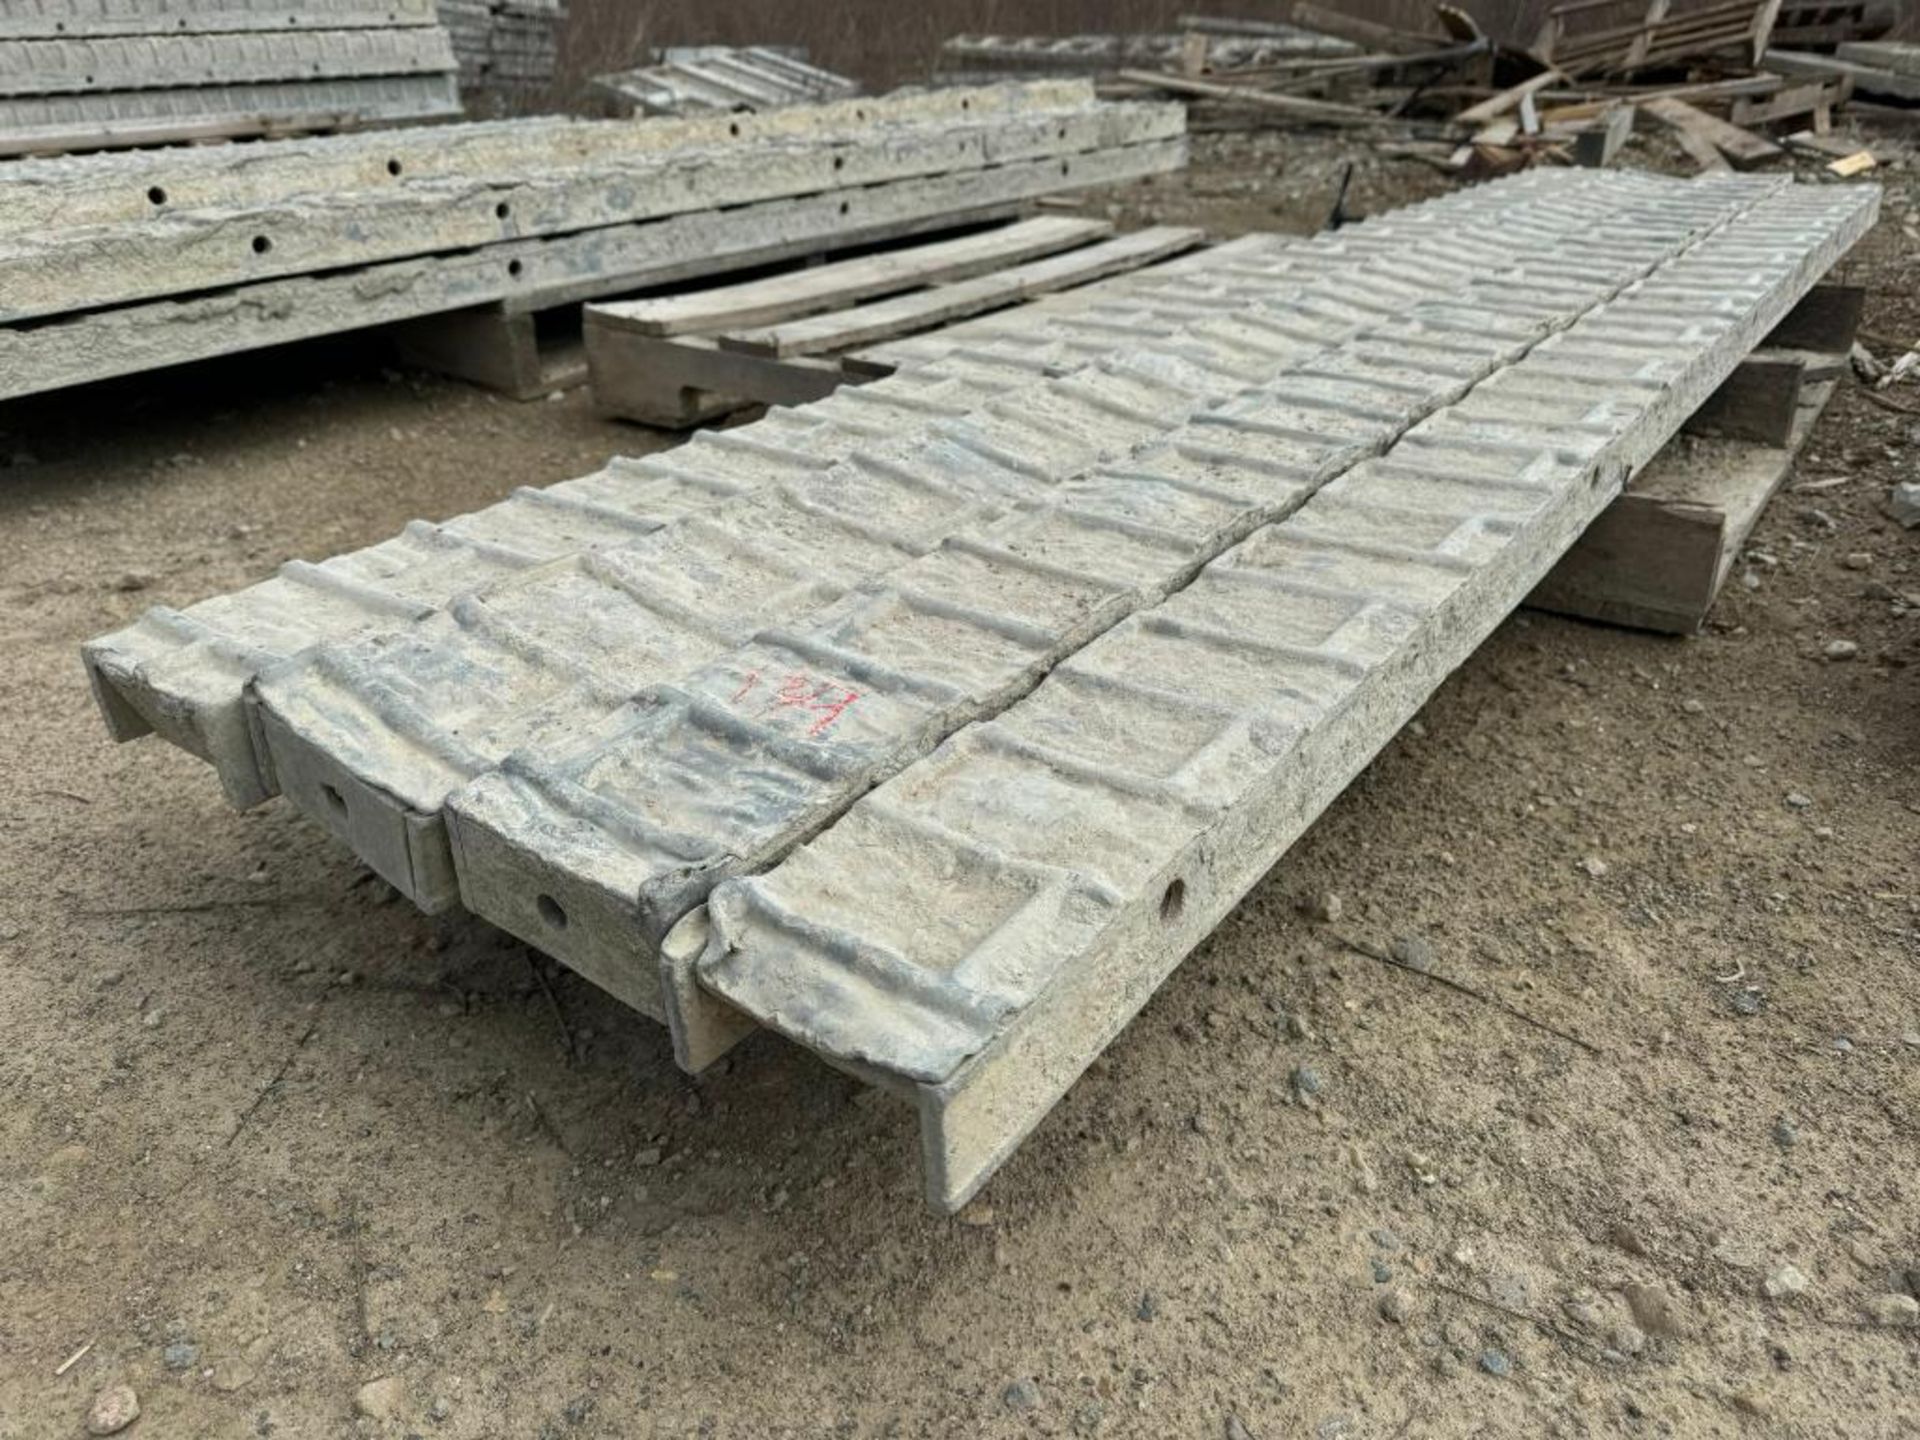 (4) 5" x 8' Textured Brick Aluminum Concrete Forms